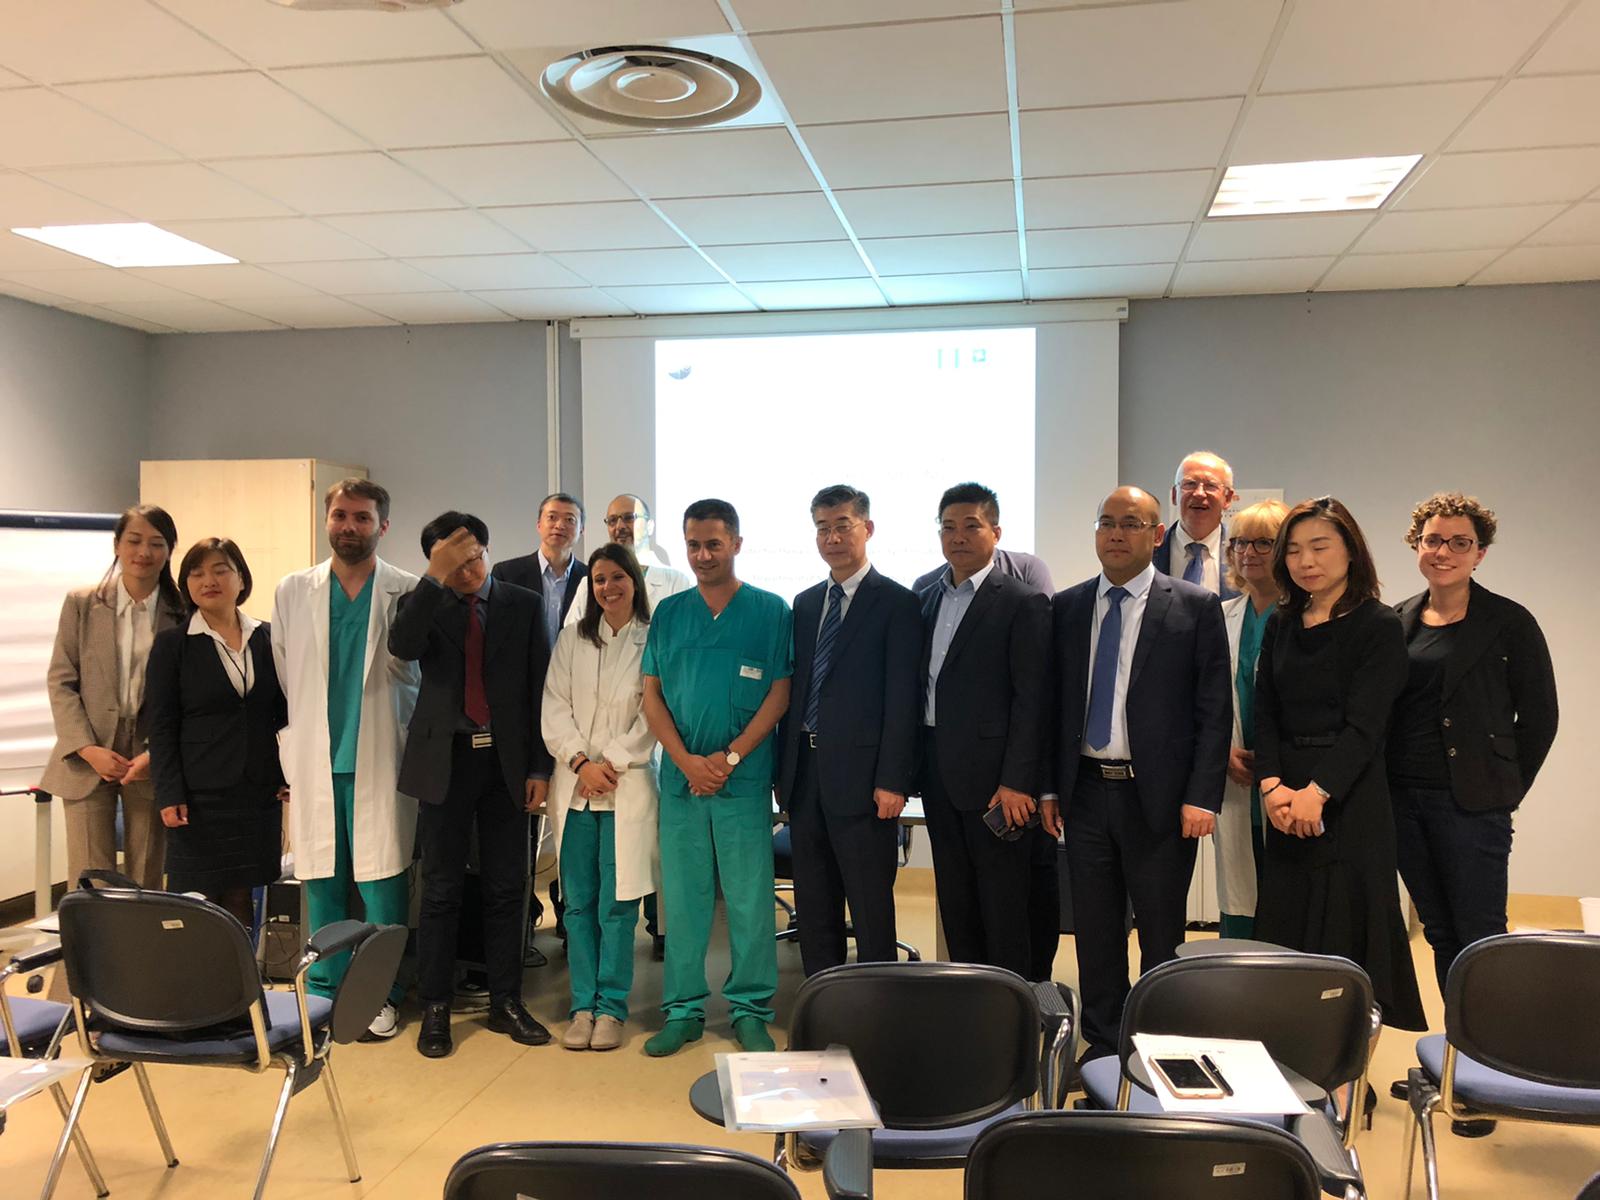 Chirurghi e ingegneri cinesi in visita alla Chirurgia toracica dell'Ospedale di Circolo